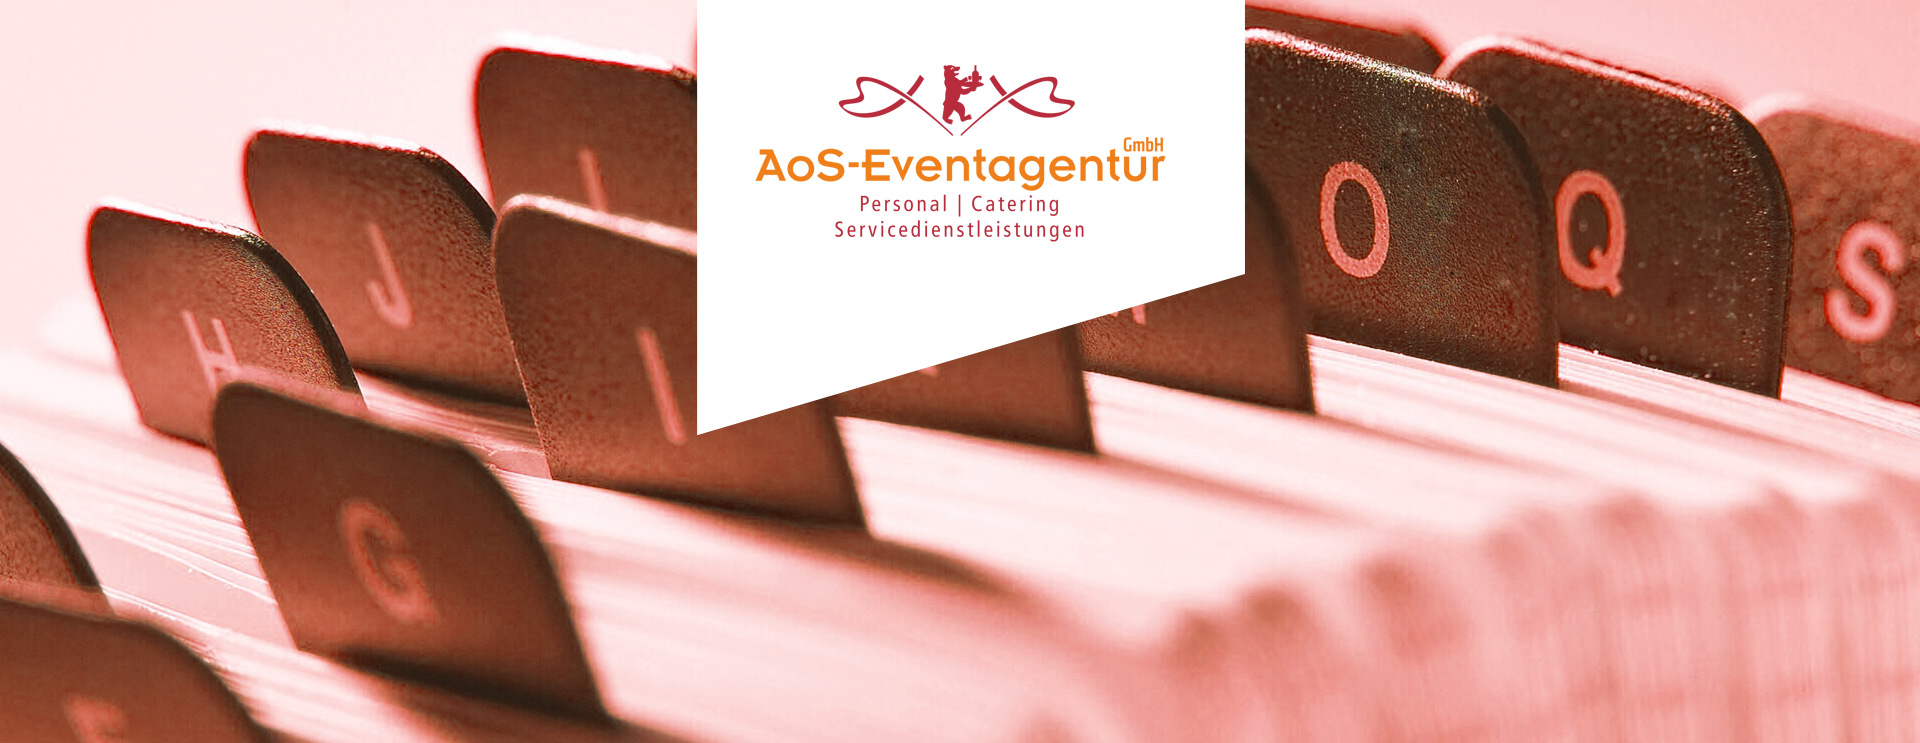 Referenzen AoS Eventagentur catering servicedienstleistungen